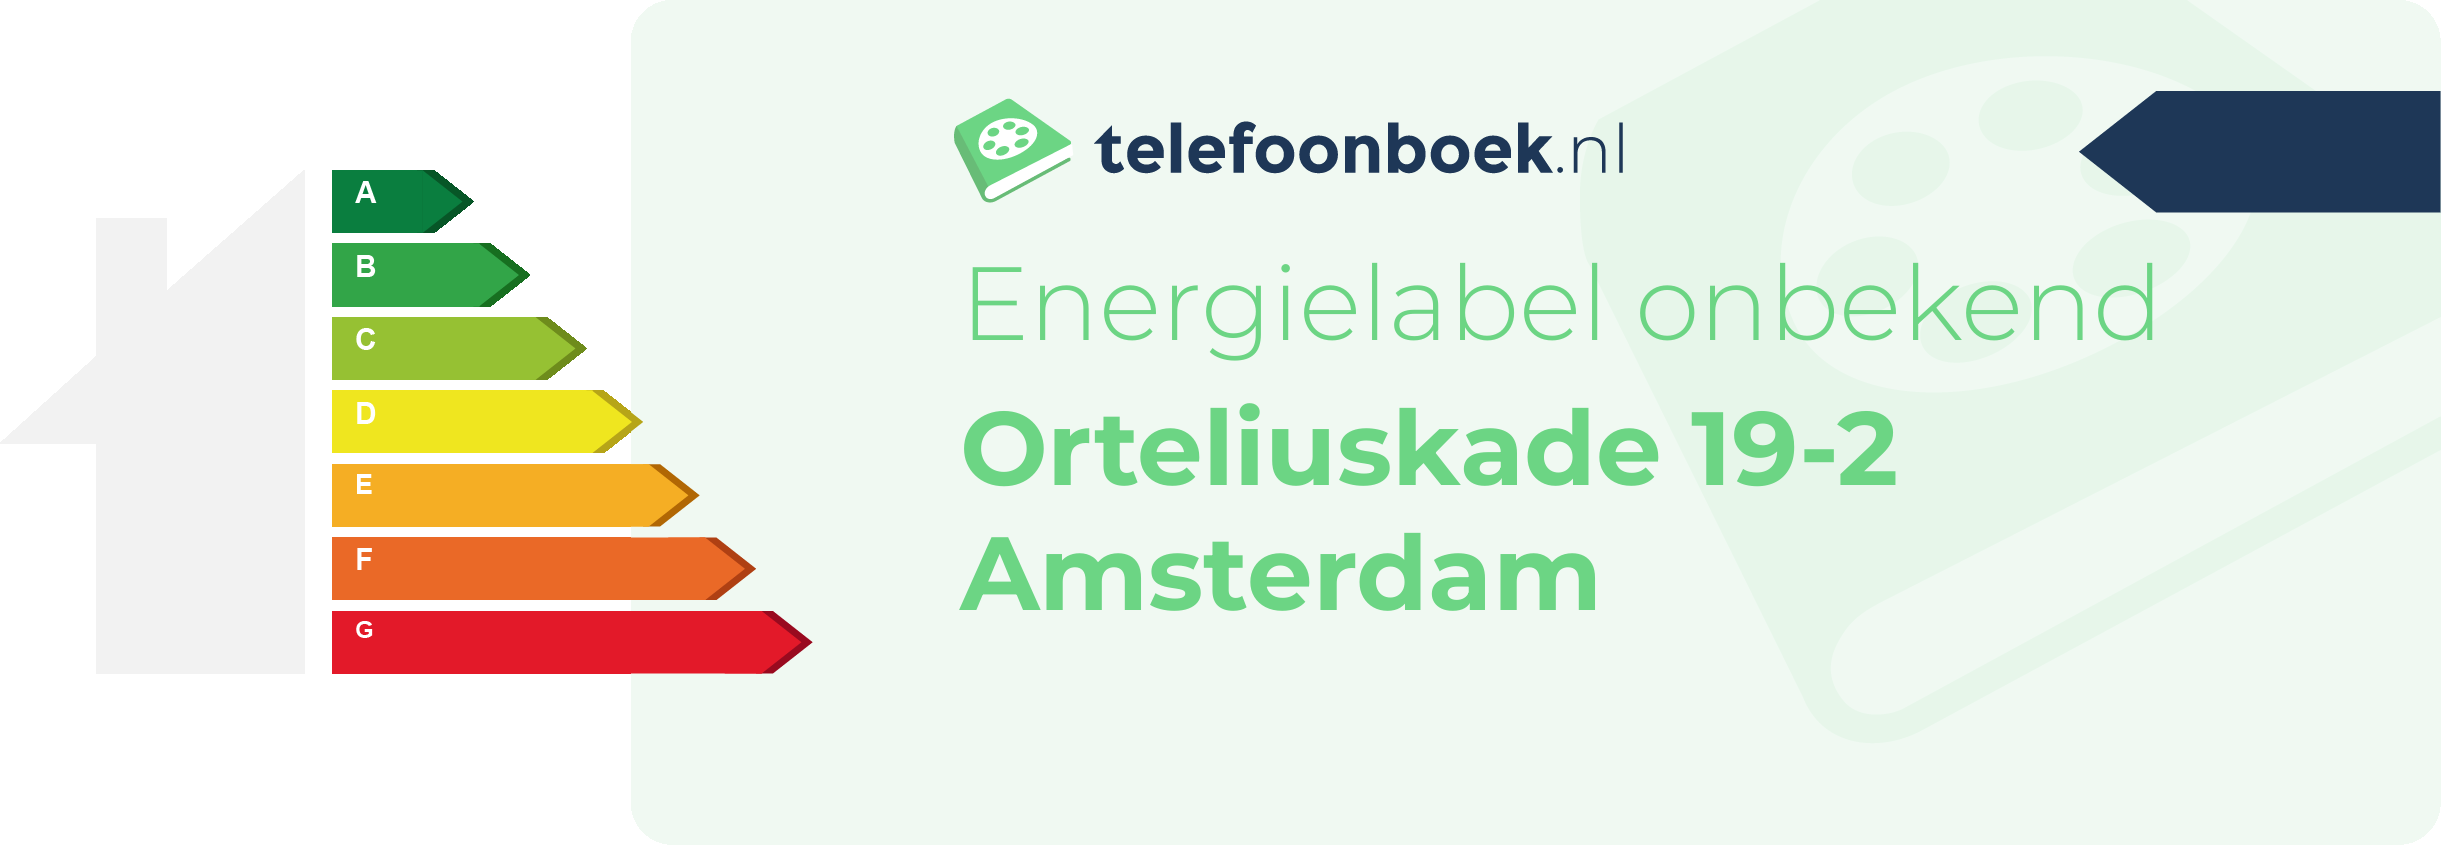 Energielabel Orteliuskade 19-2 Amsterdam